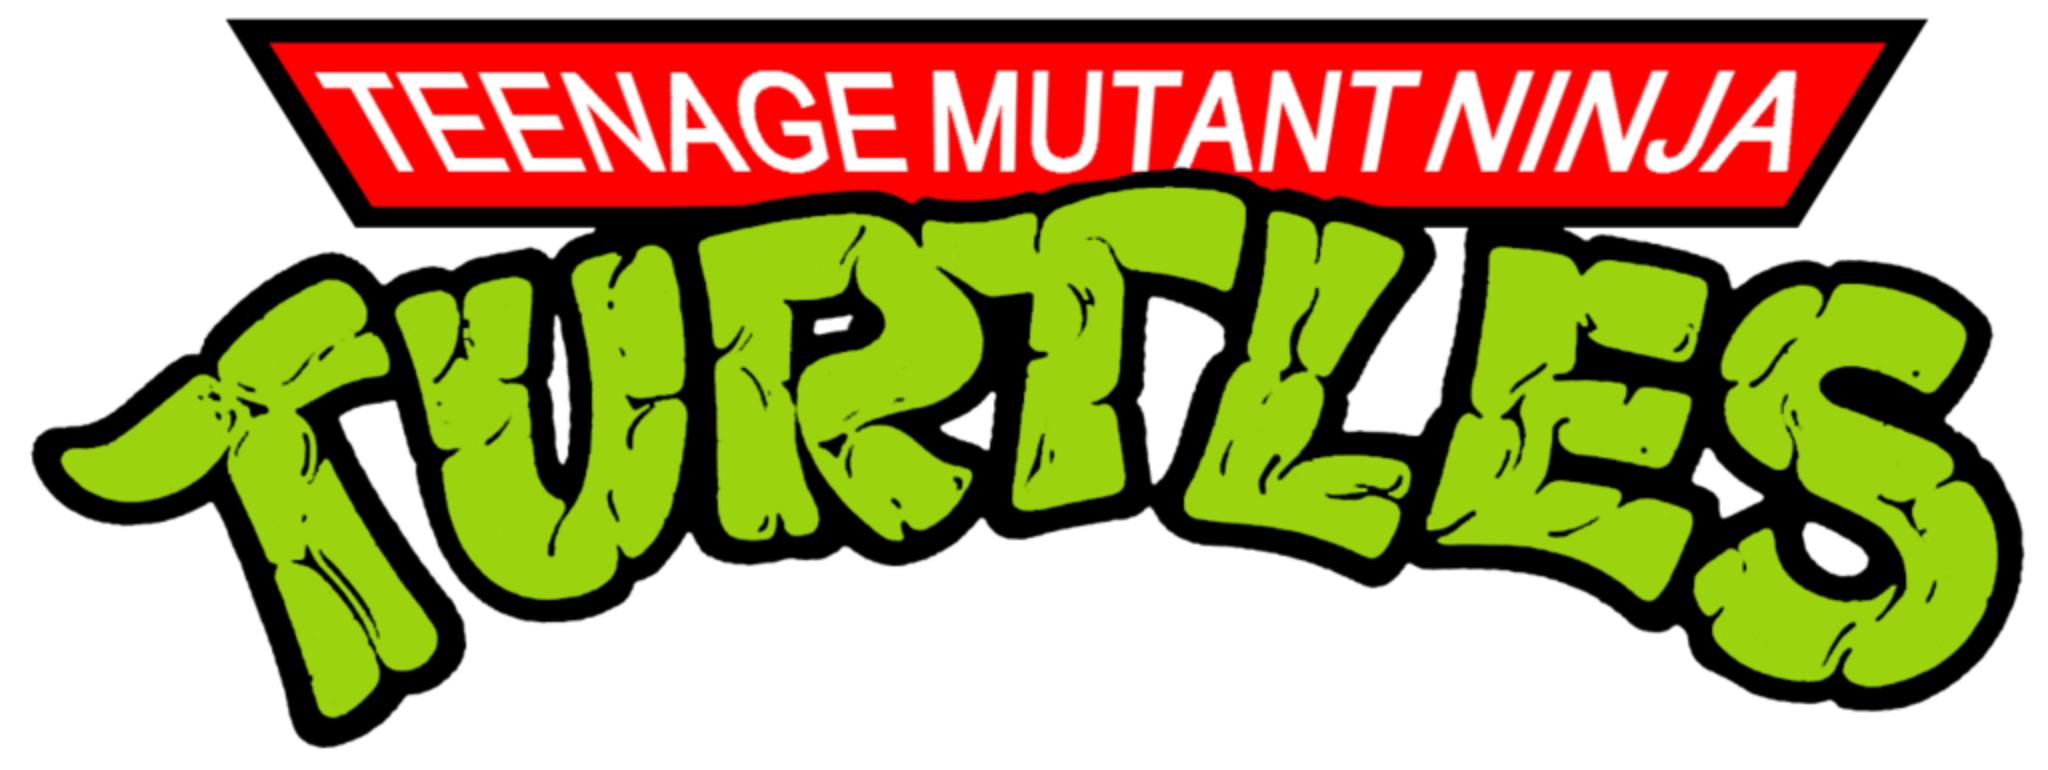 Teenage Mutant Ninja Turtles 1987 Volume 1 